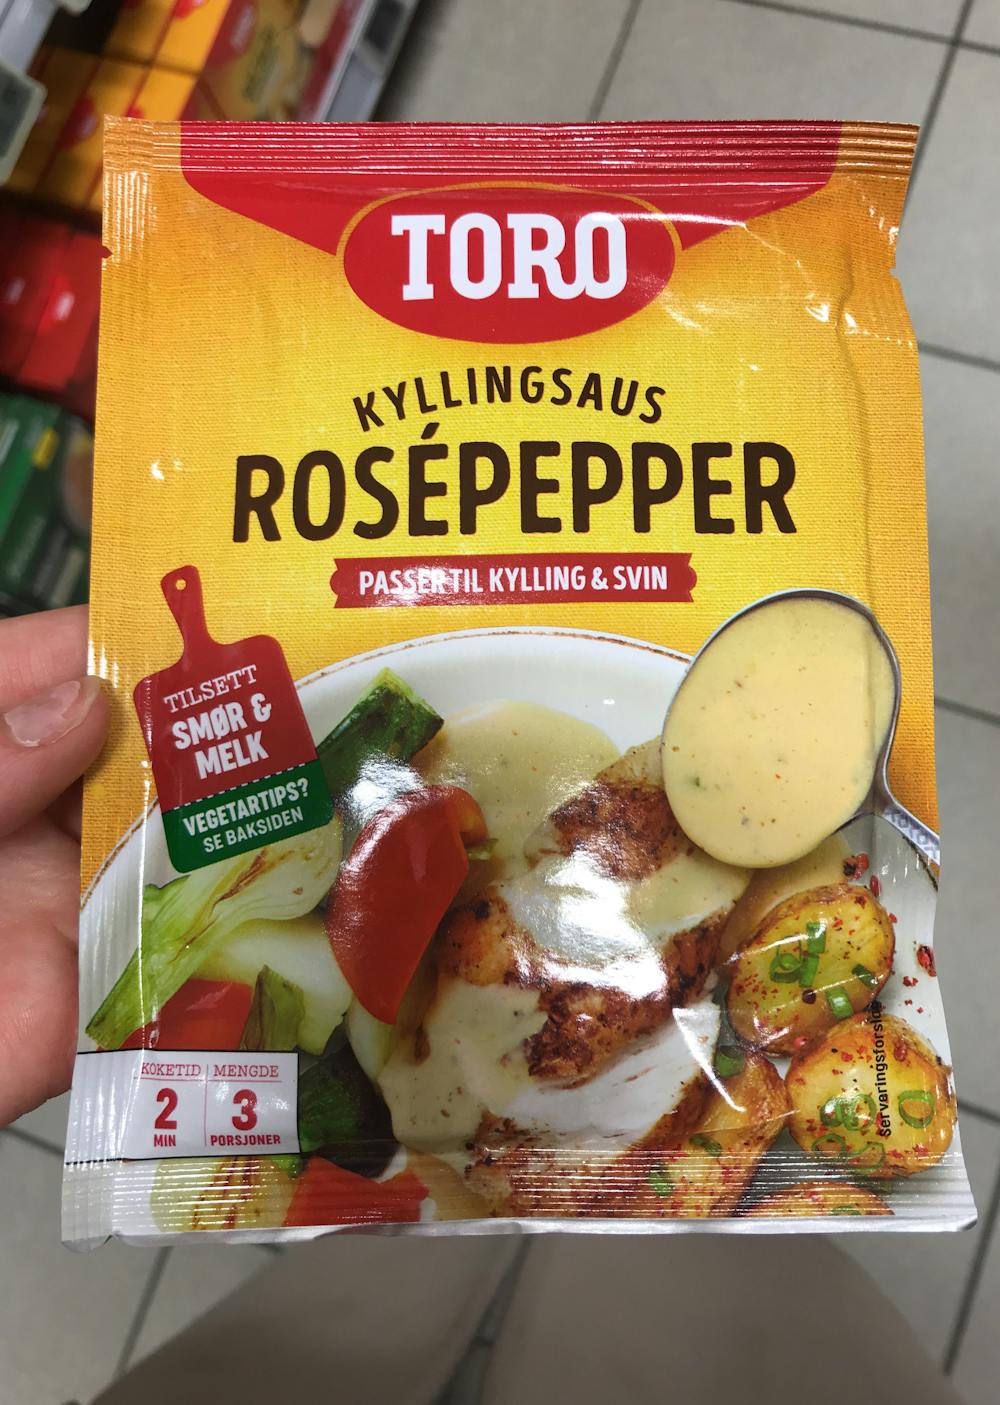 Kyllingsaus rosepepper, Toro